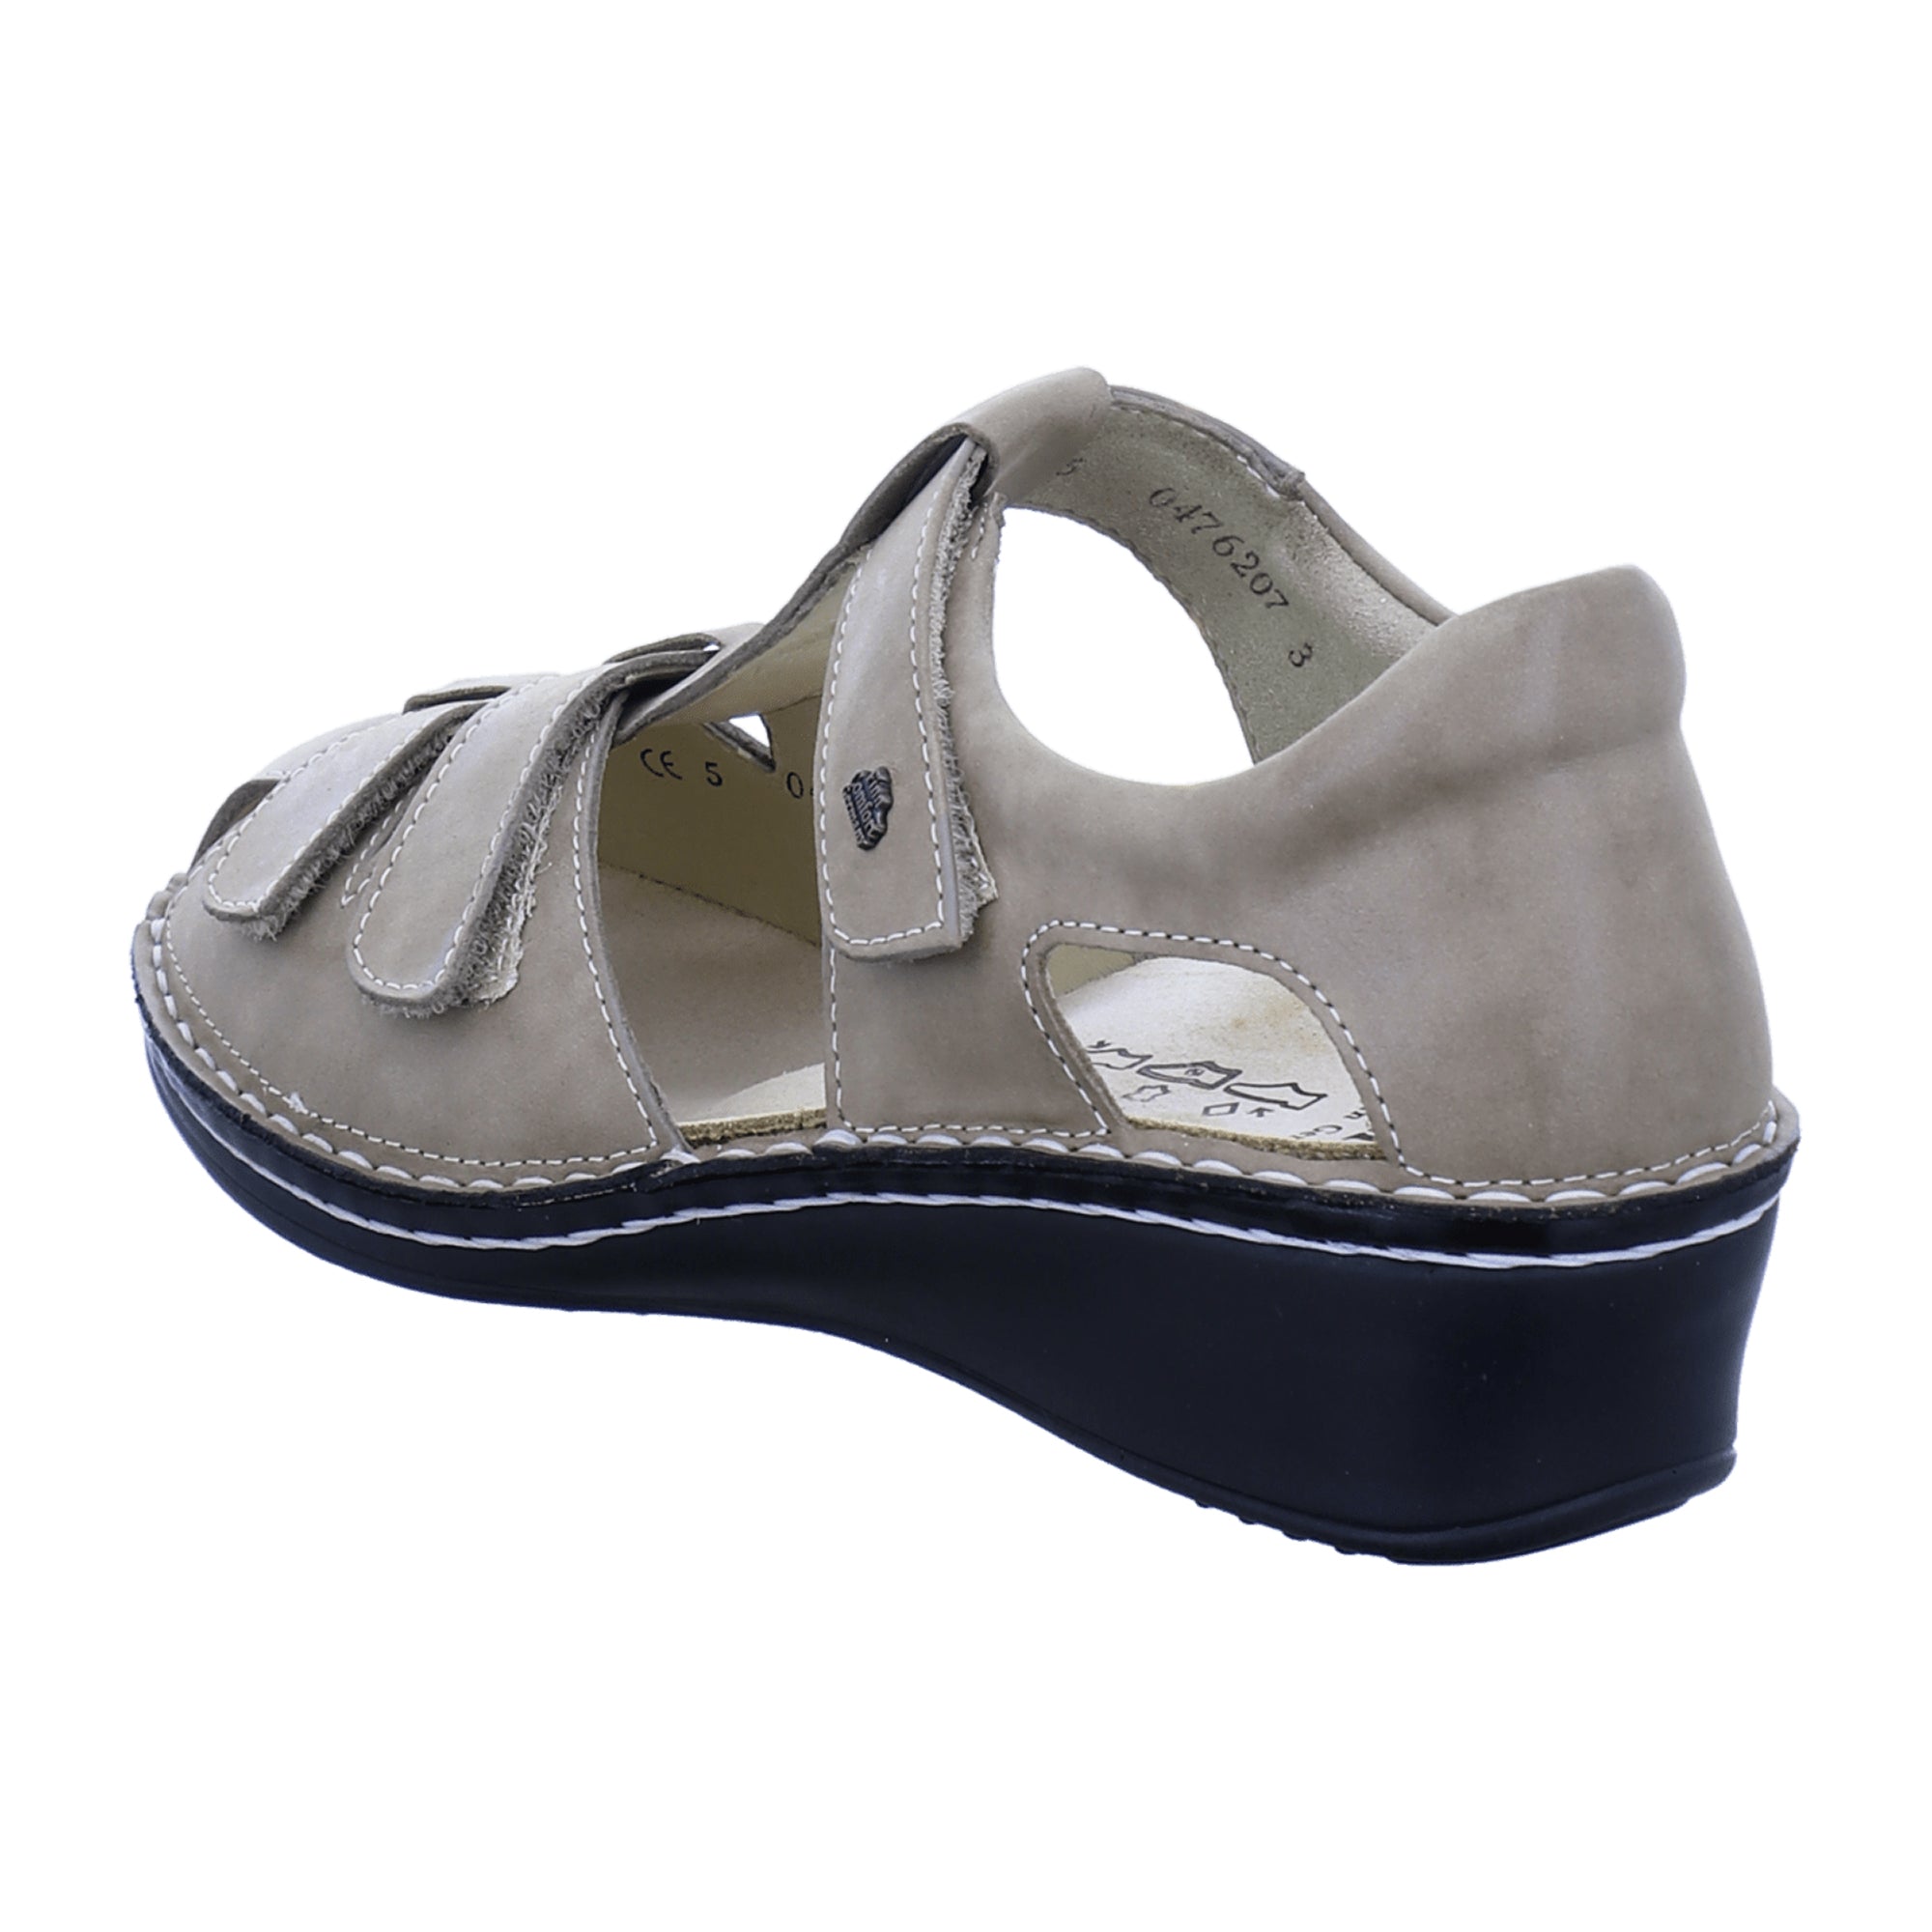 Finn Comfort Funen Women's Comfort Sandals - Stylish & Durable in Beige